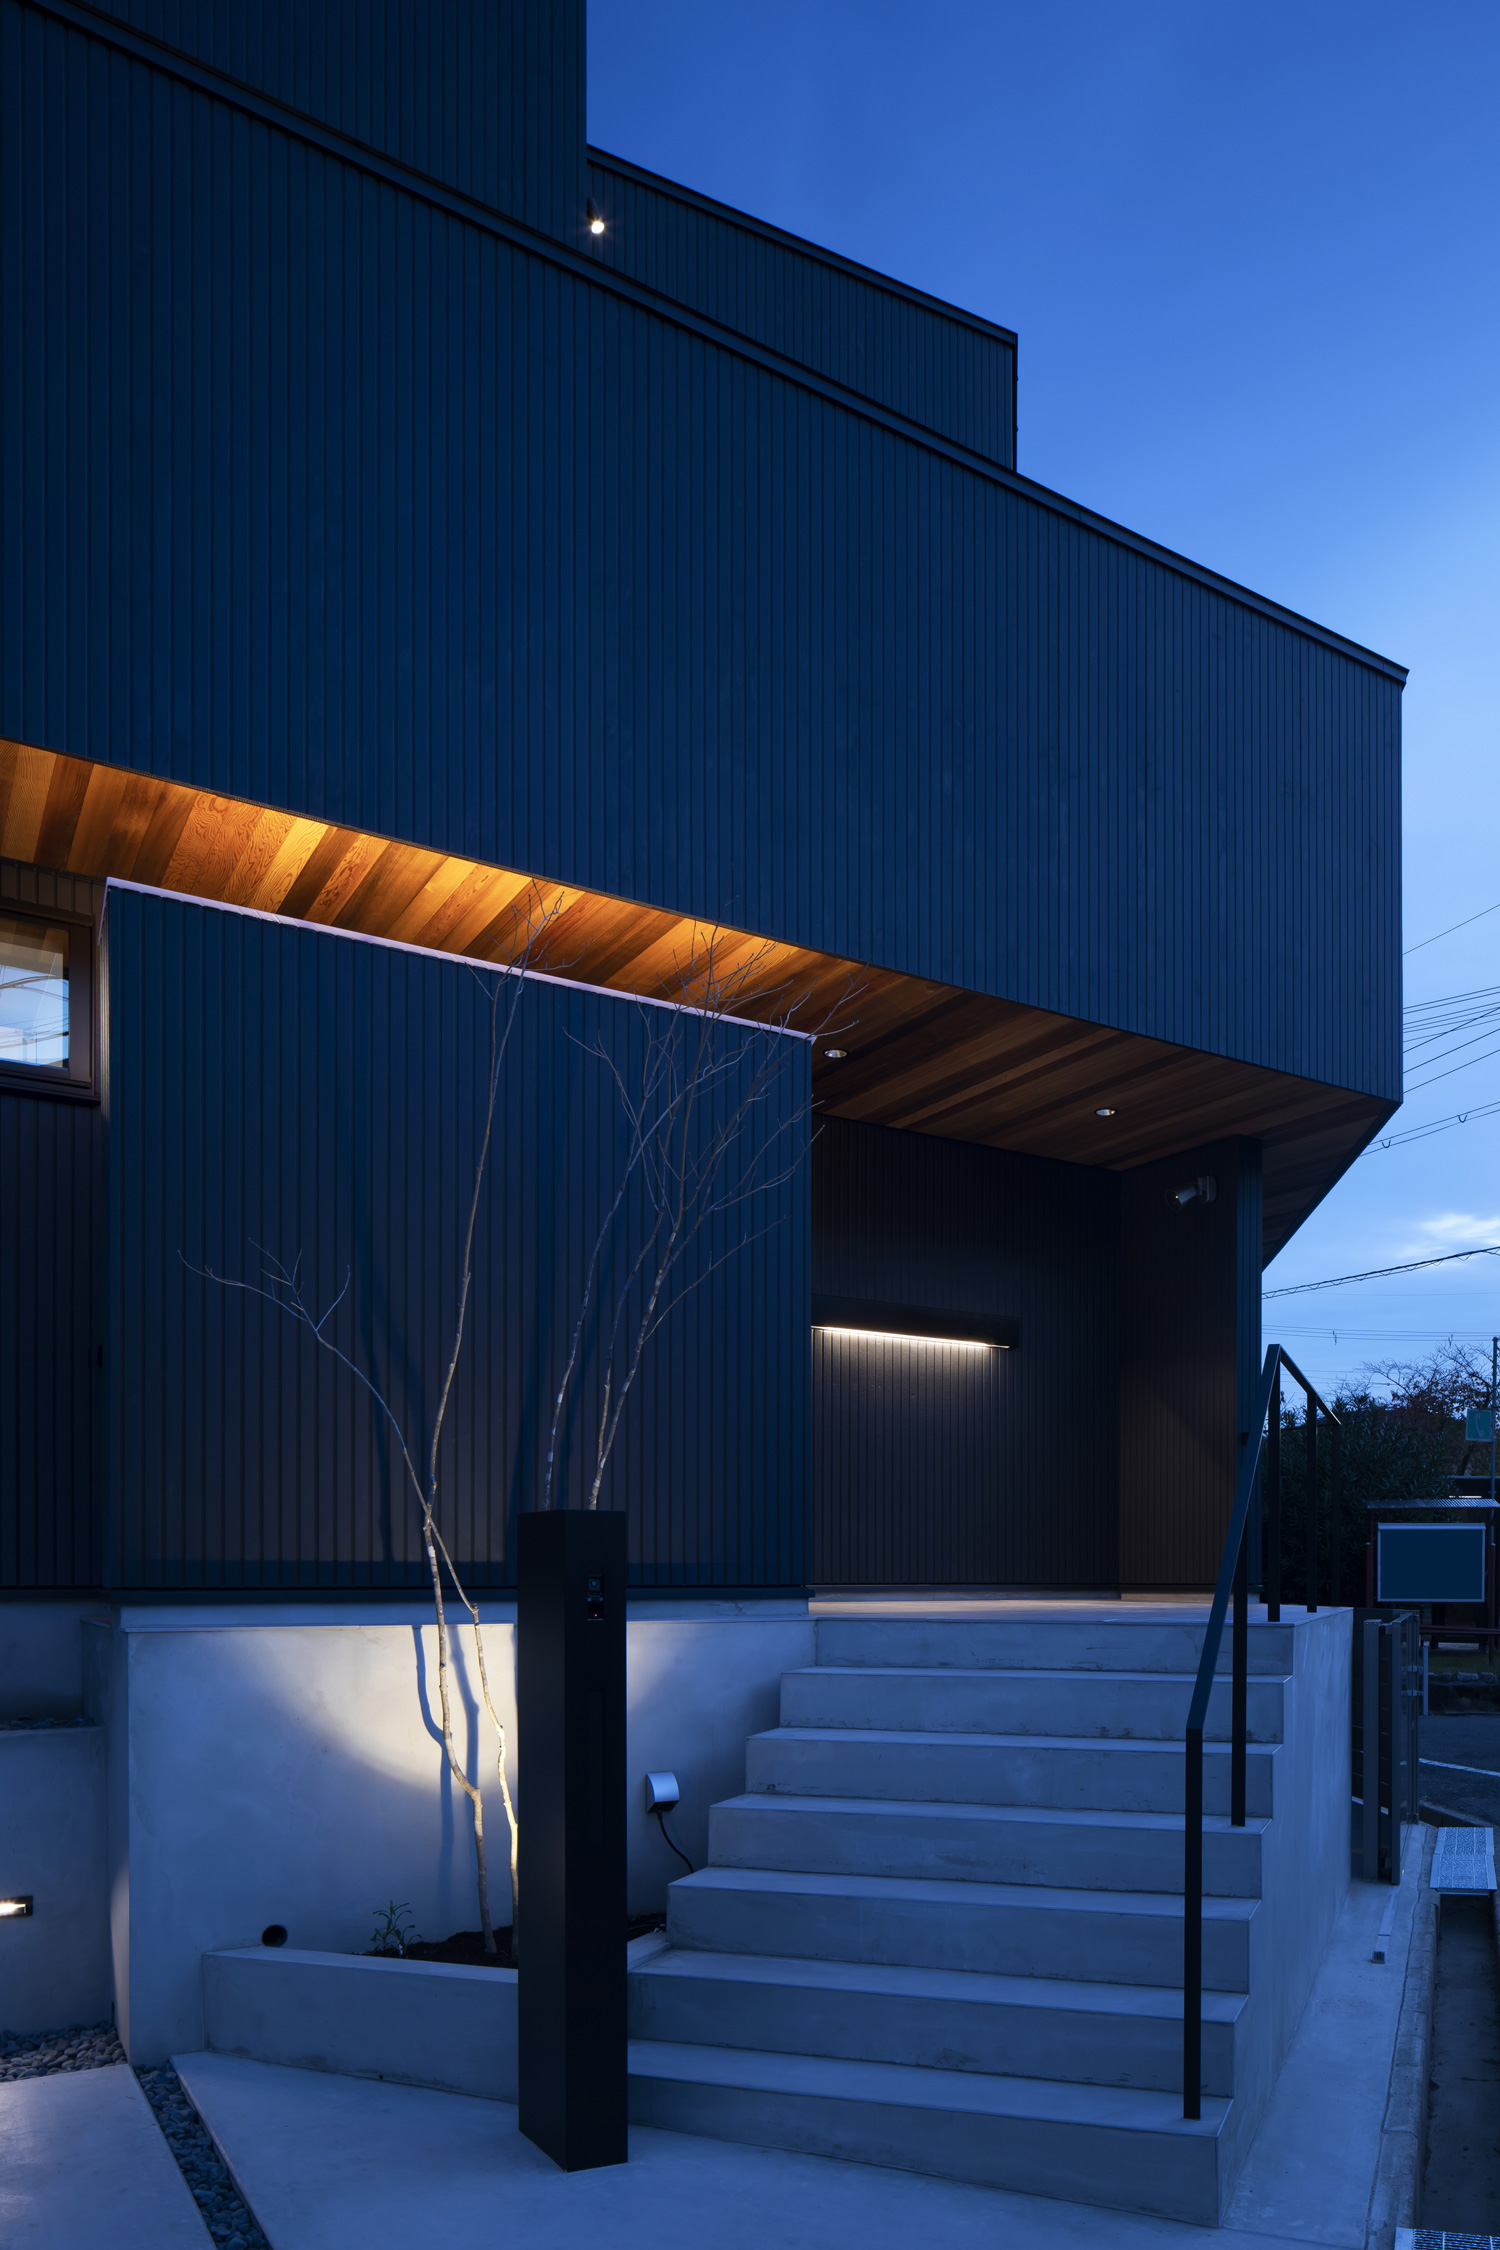 コンクリートの階段アプローチにある木が照明に照らされた住宅の外観・デザイン住宅